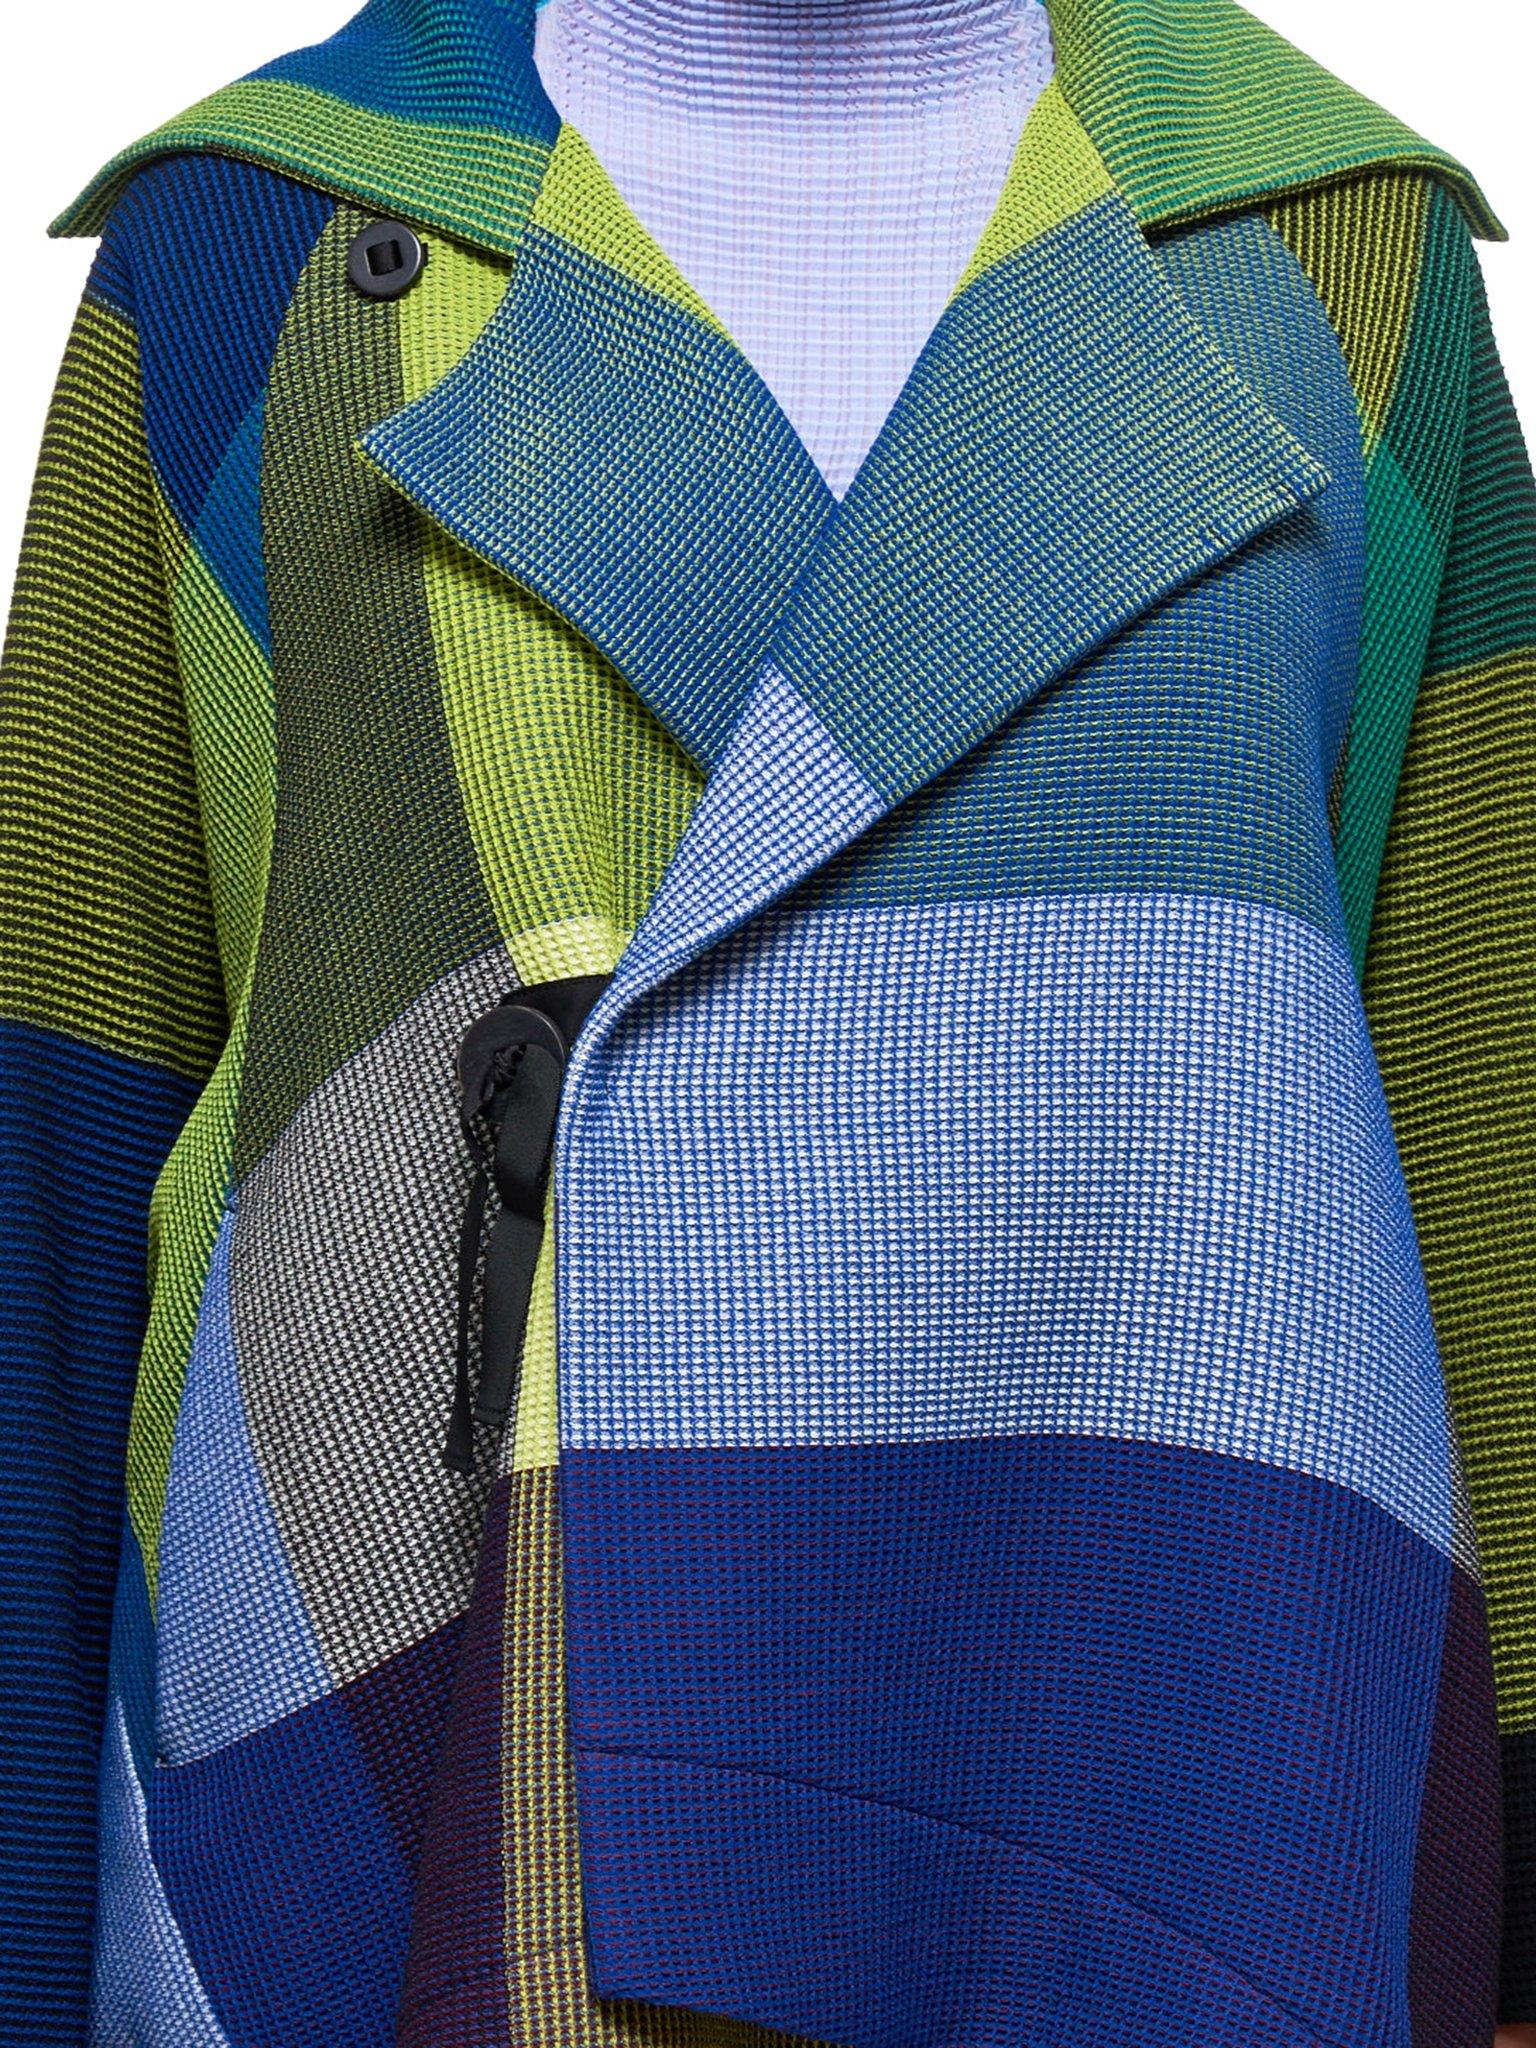 Issey Miyake Wool Multiple Coat in Blue - Lyst